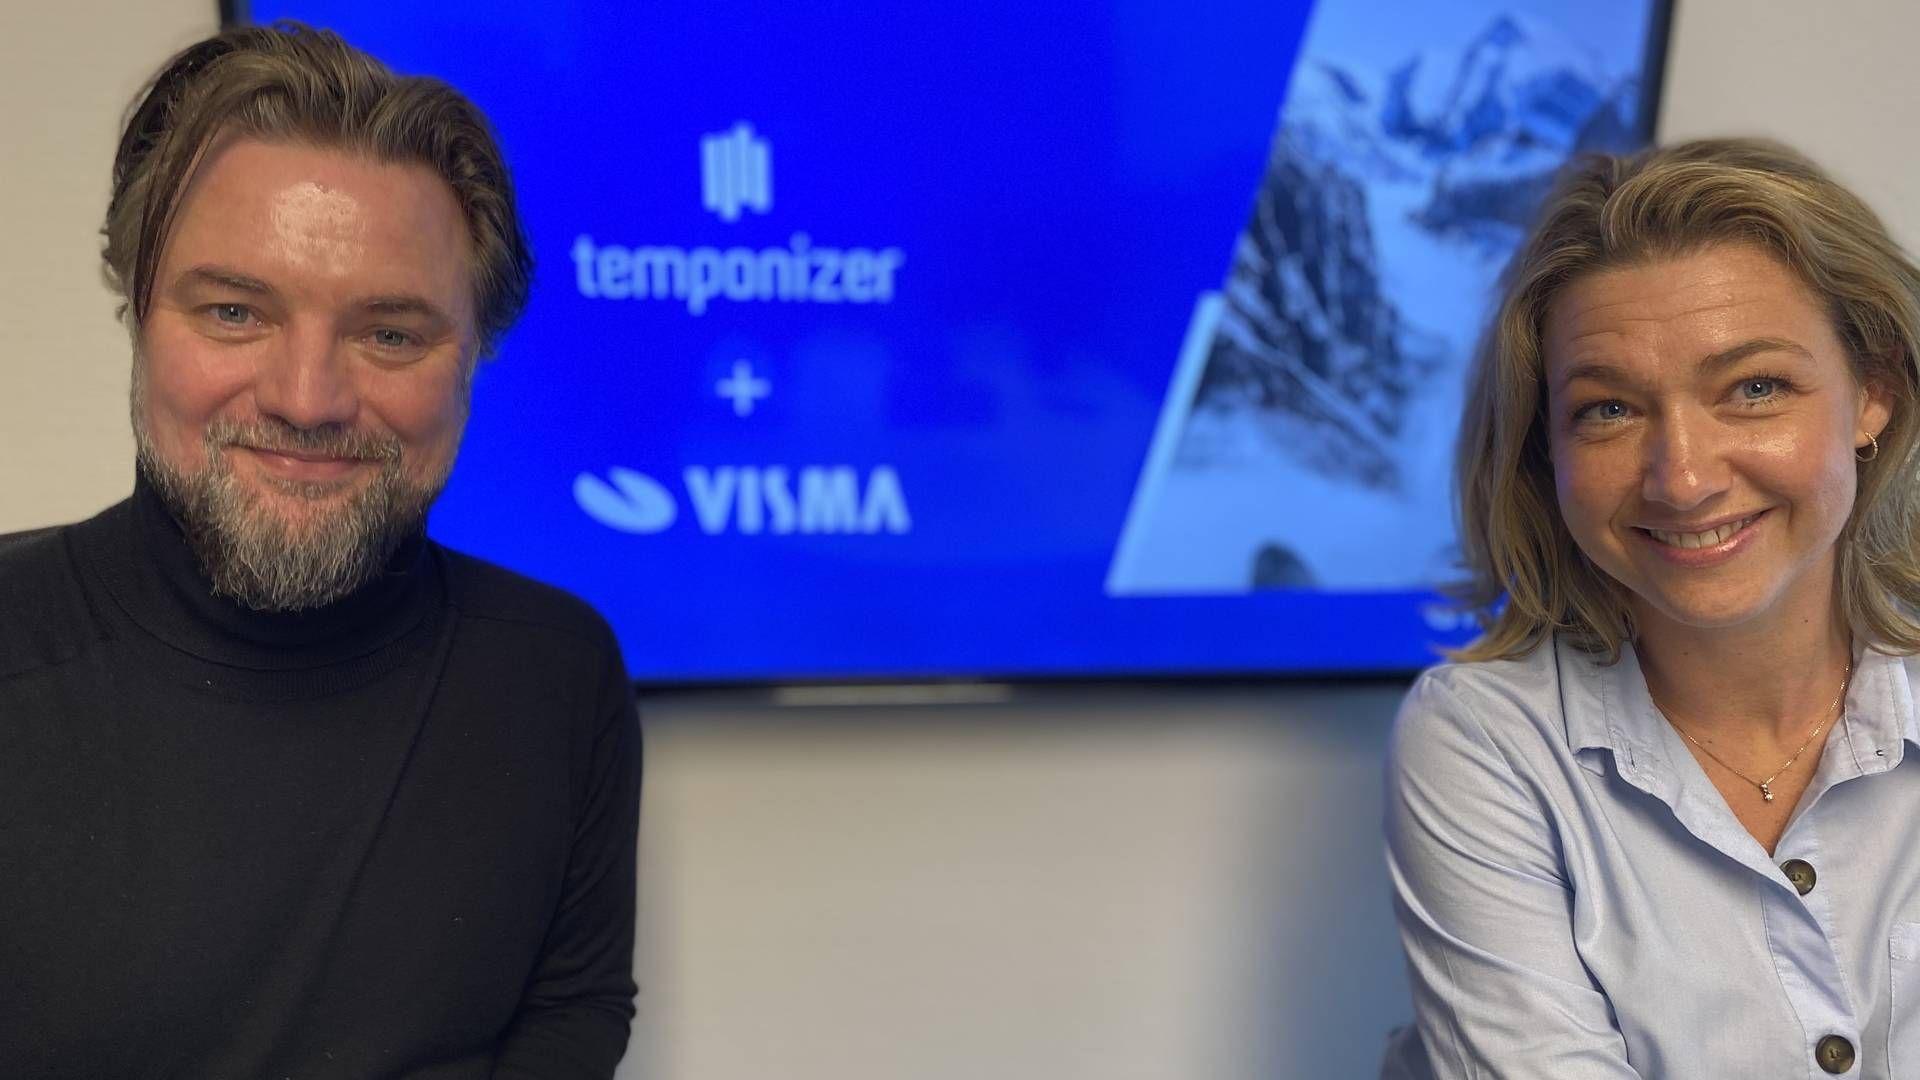 Claus Alexander Rasmussen og Monika Juul Henriksen offentliggjorde Visma Enterprises køb af Temponizer i marts 2021. | Foto: Visma/PR